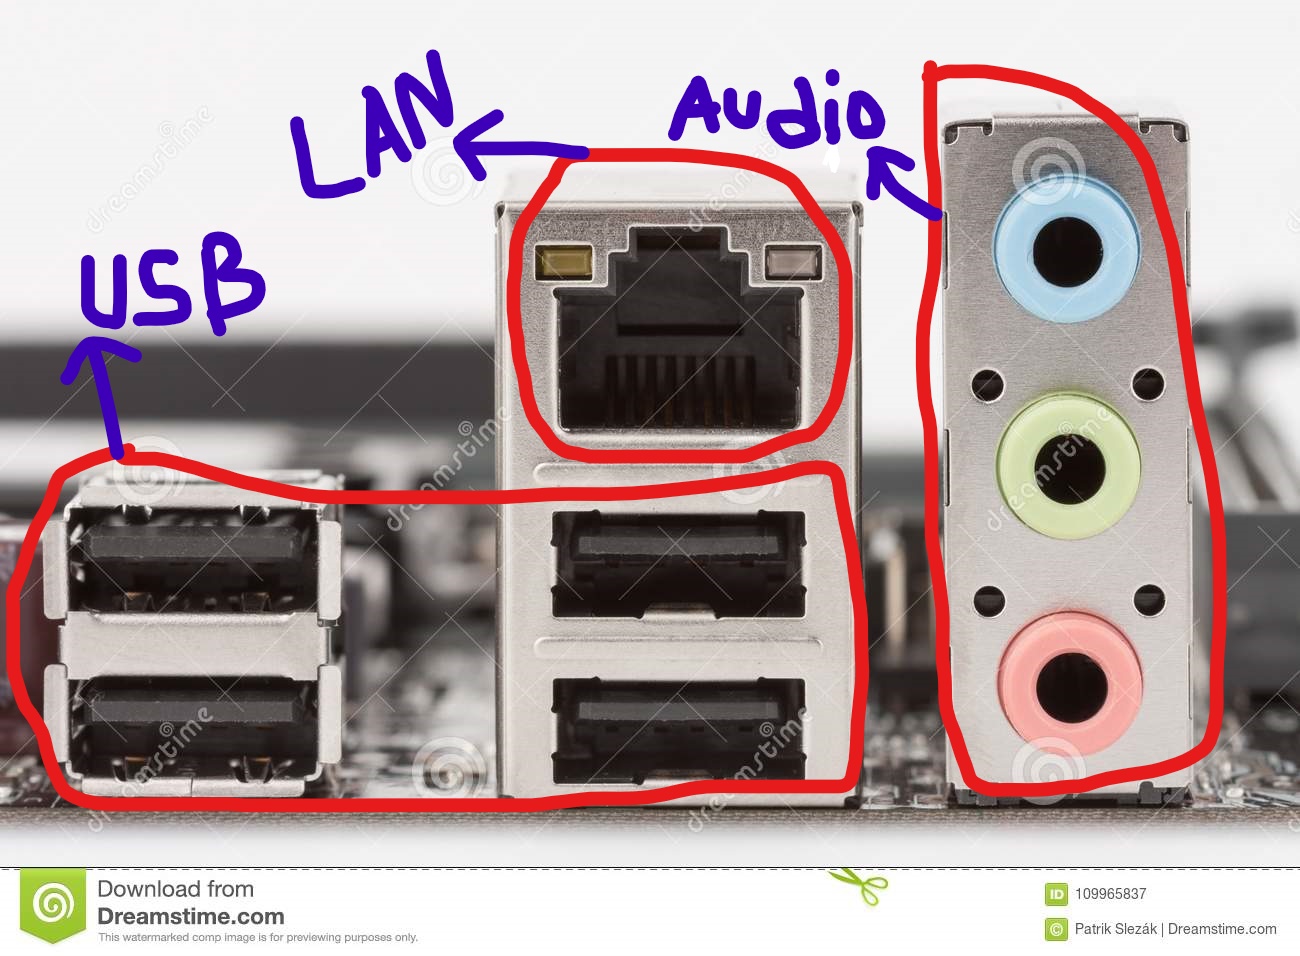 Inkedports-motherboard-usb-lan-line-out-microphone-usb-ports-lan-rj-port-light-blue-line-port-lime-line-out-port-pink-109965837_LI.jpg